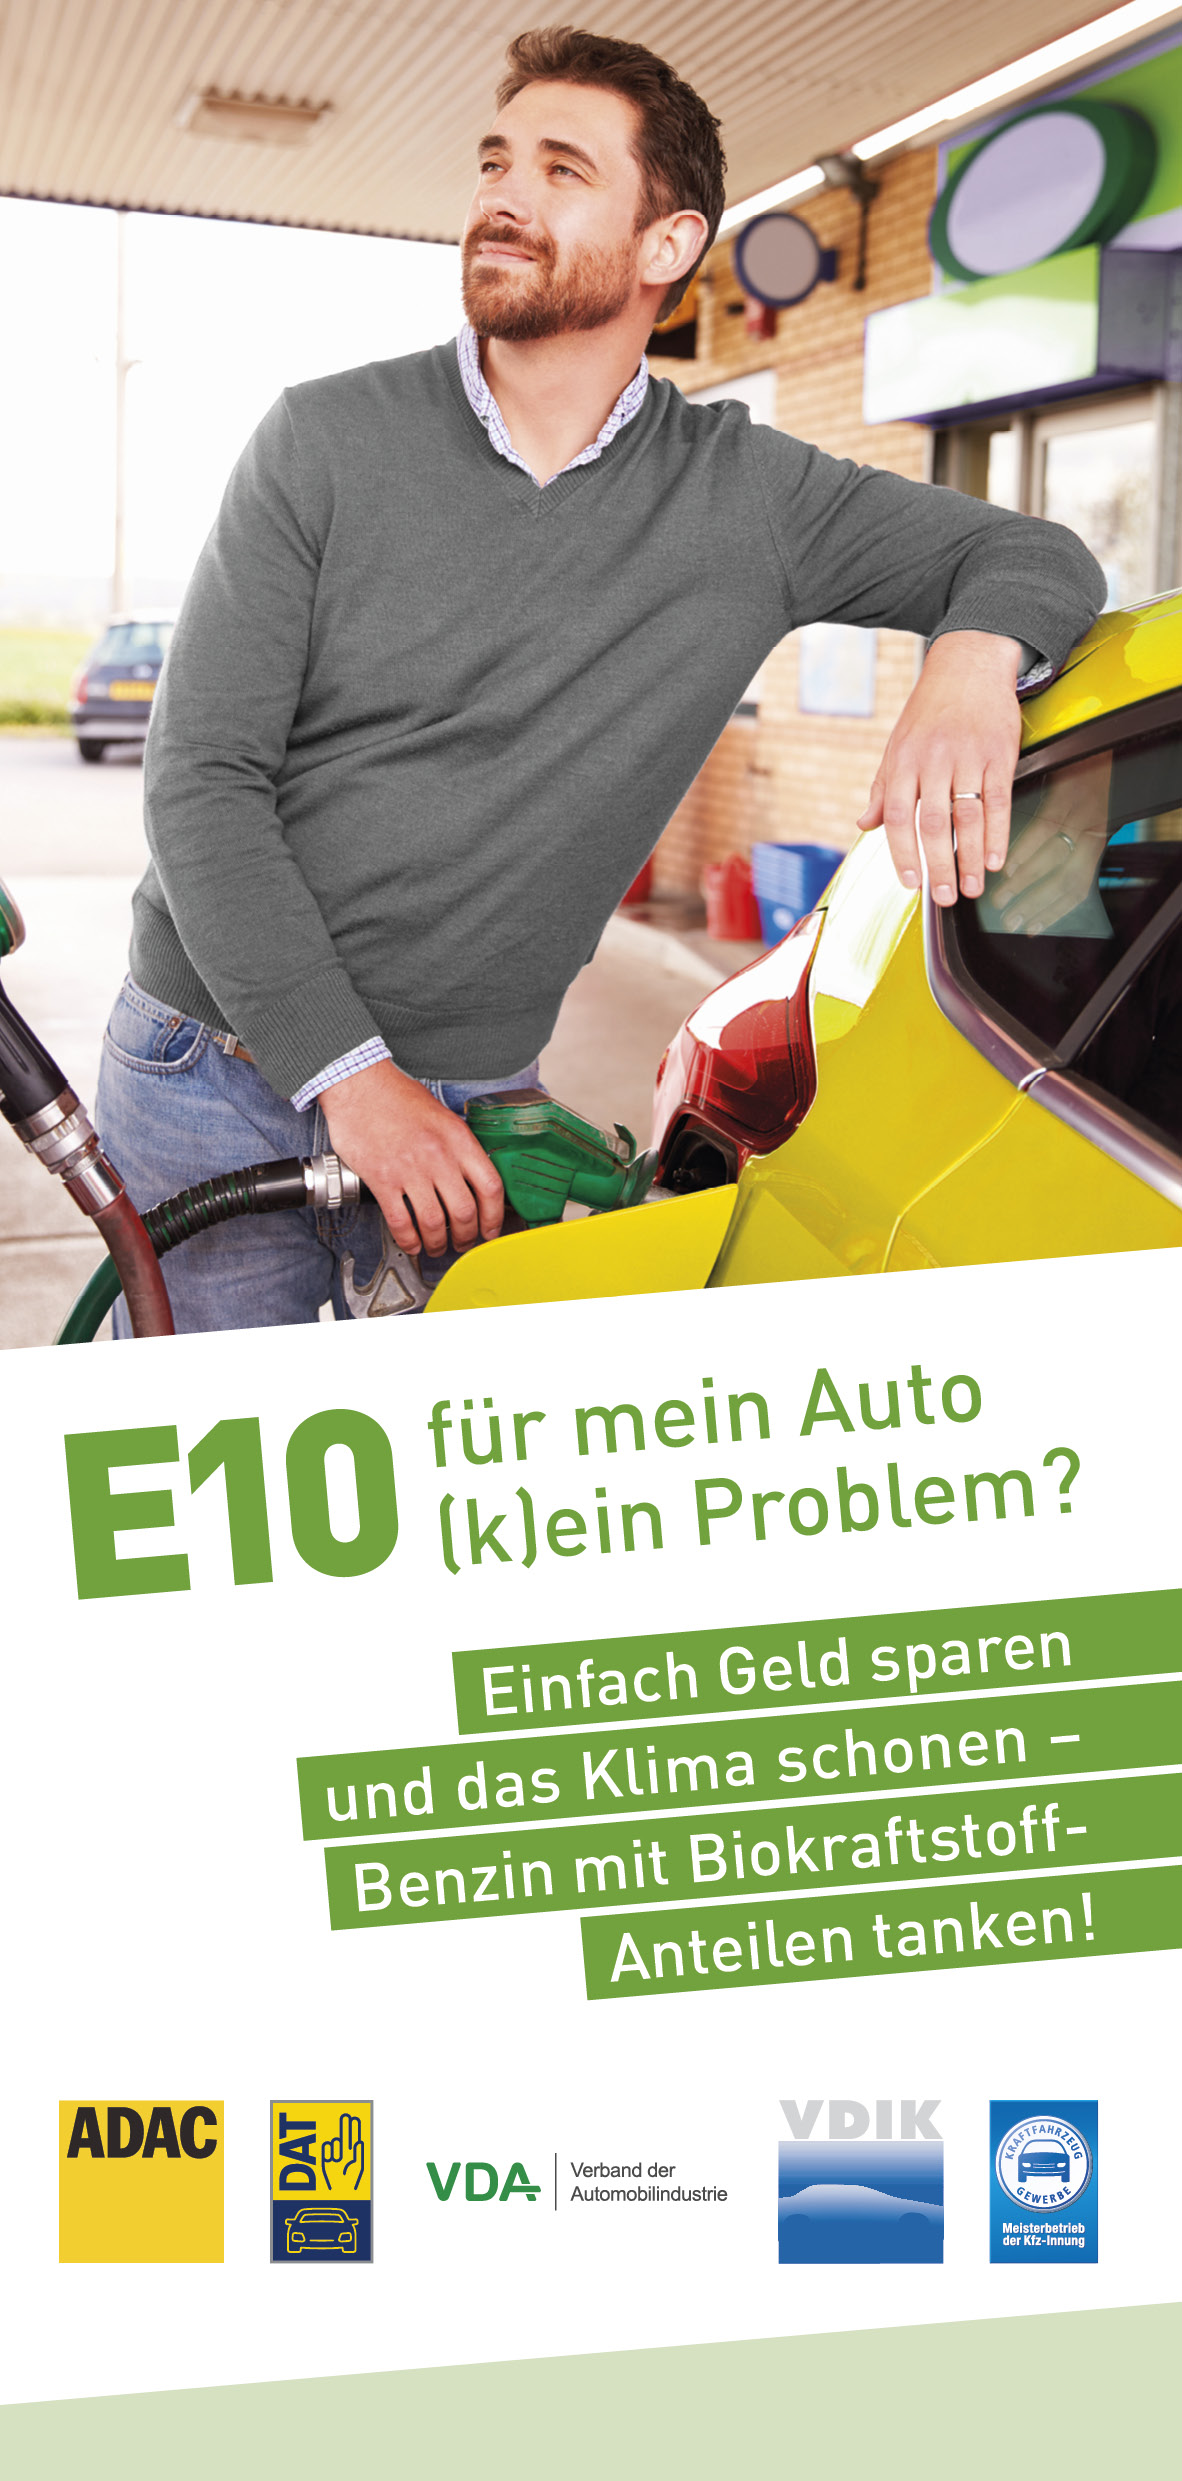 Flyer „E10 für mein Auto (k)ein Problem?“ für Mitglieder